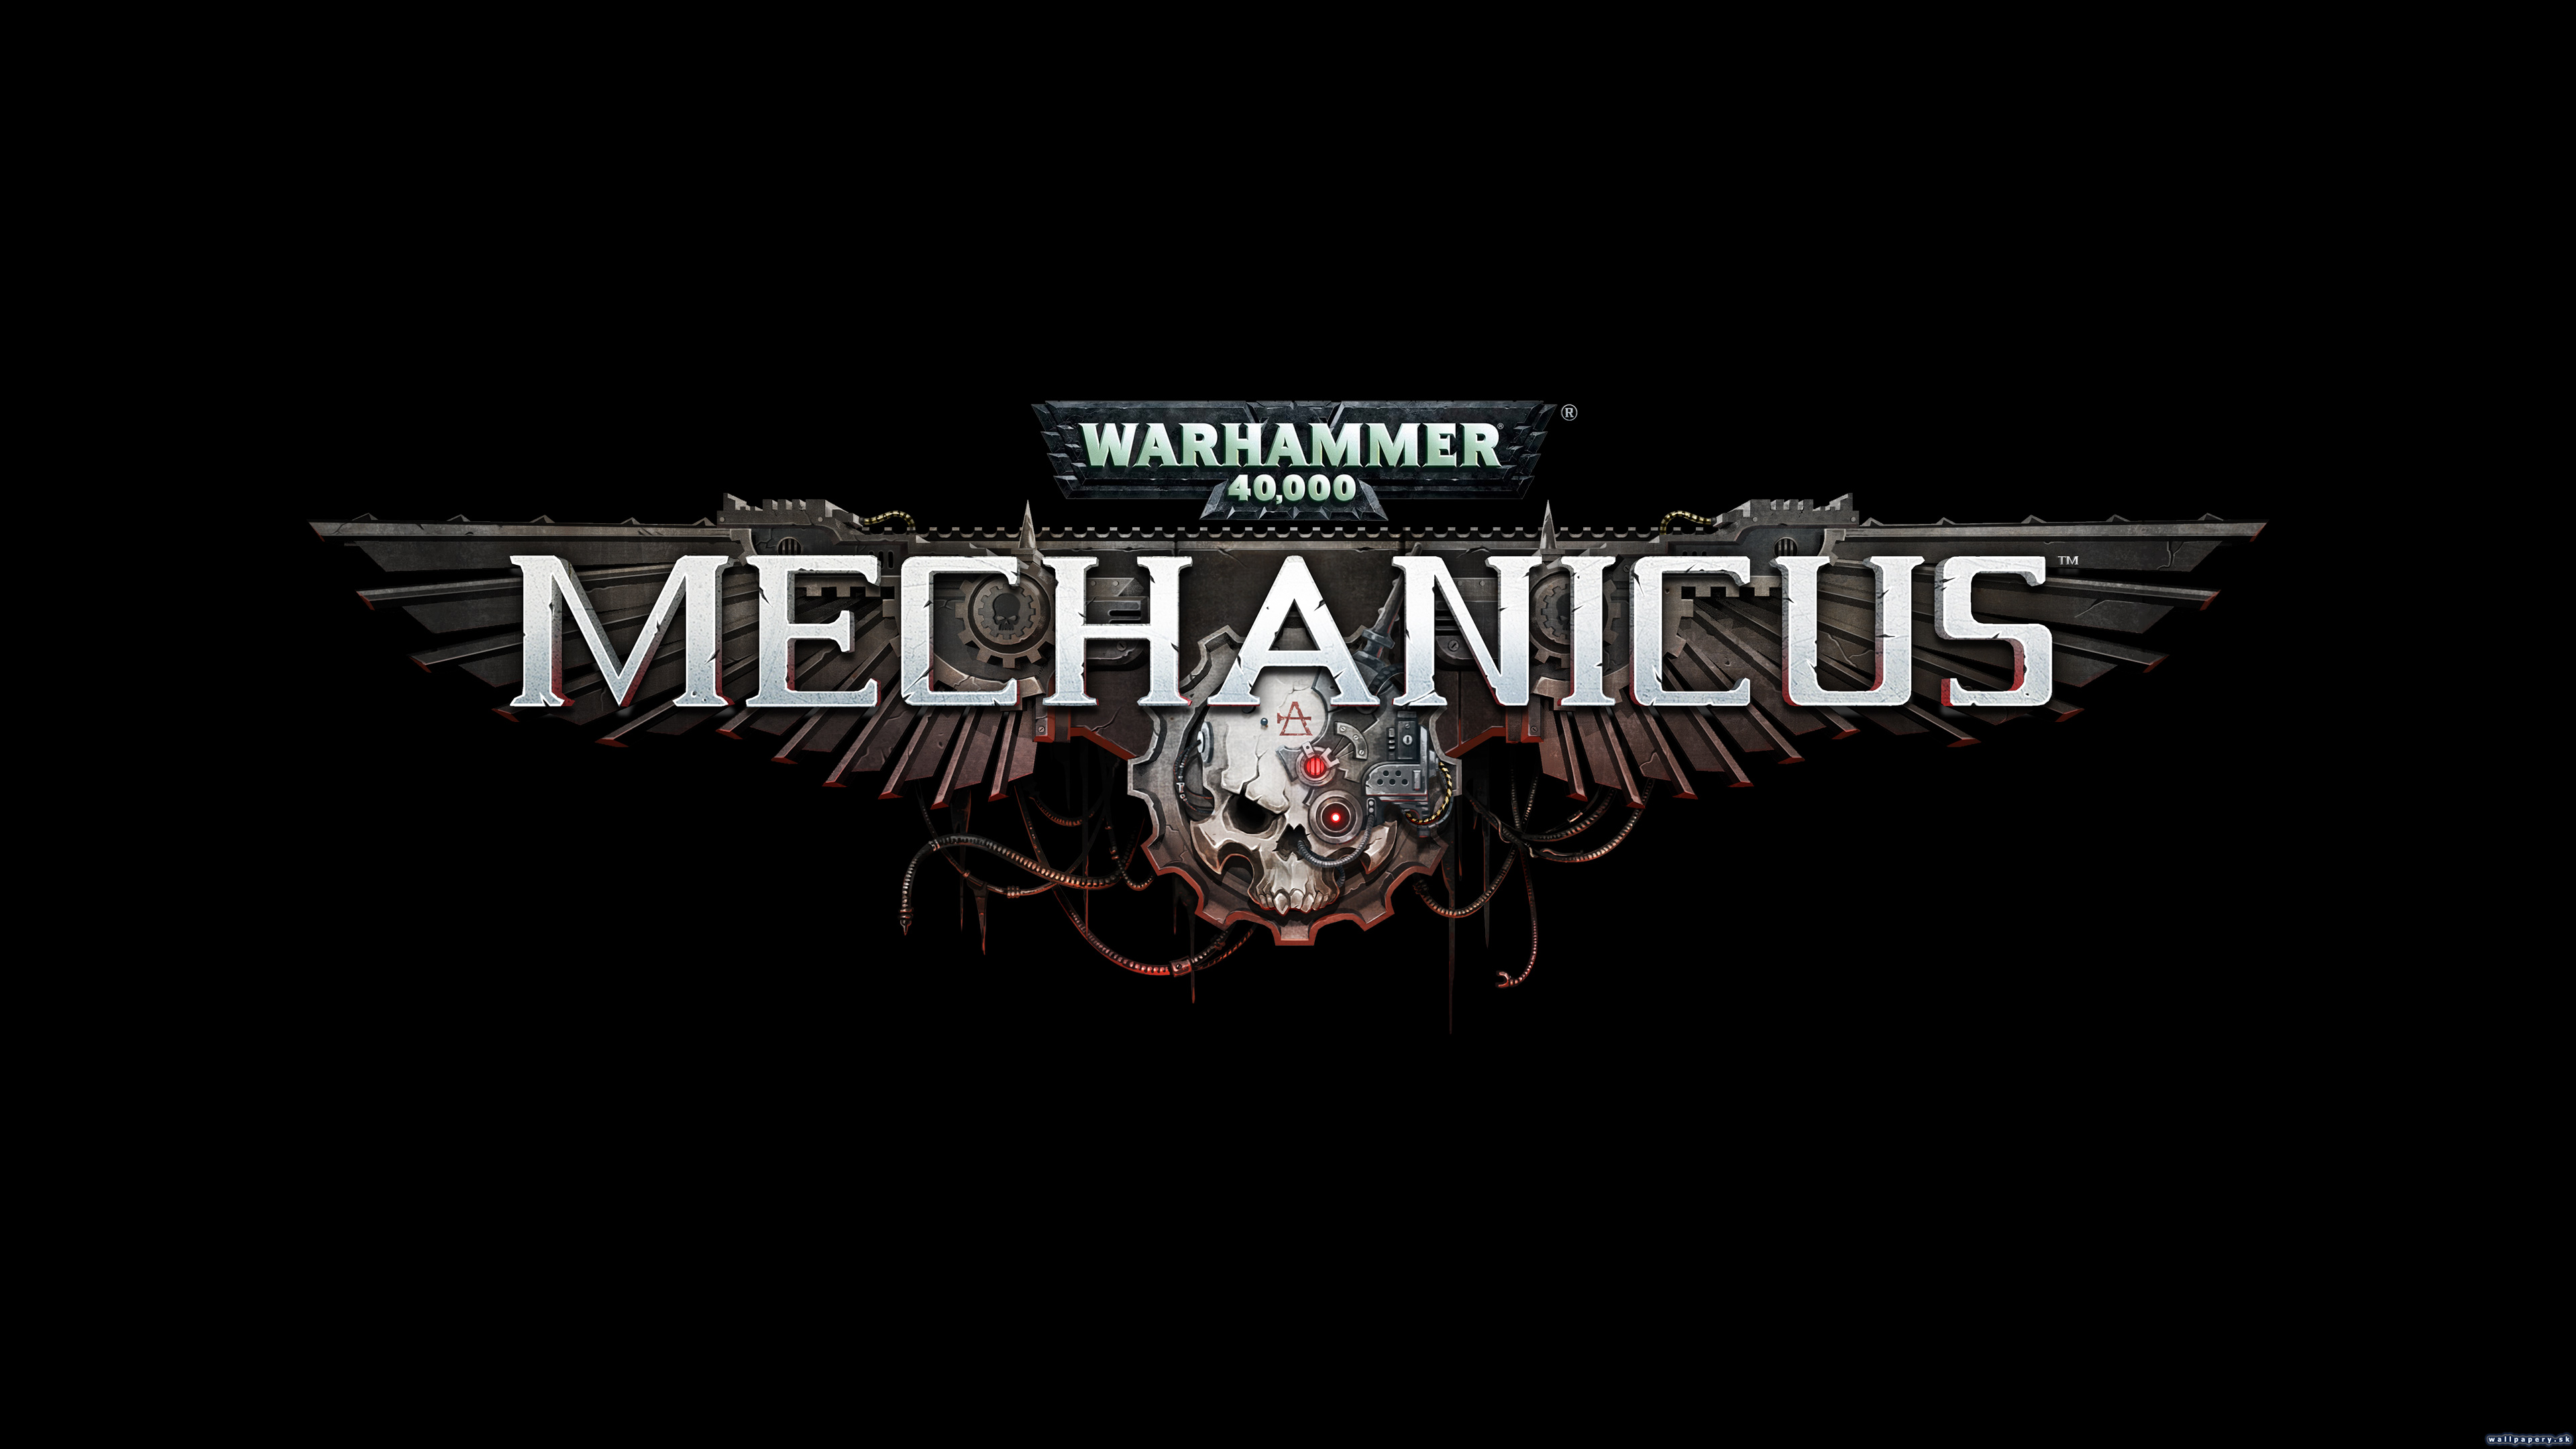 Warhammer 40,000: Mechanicus - wallpaper 2